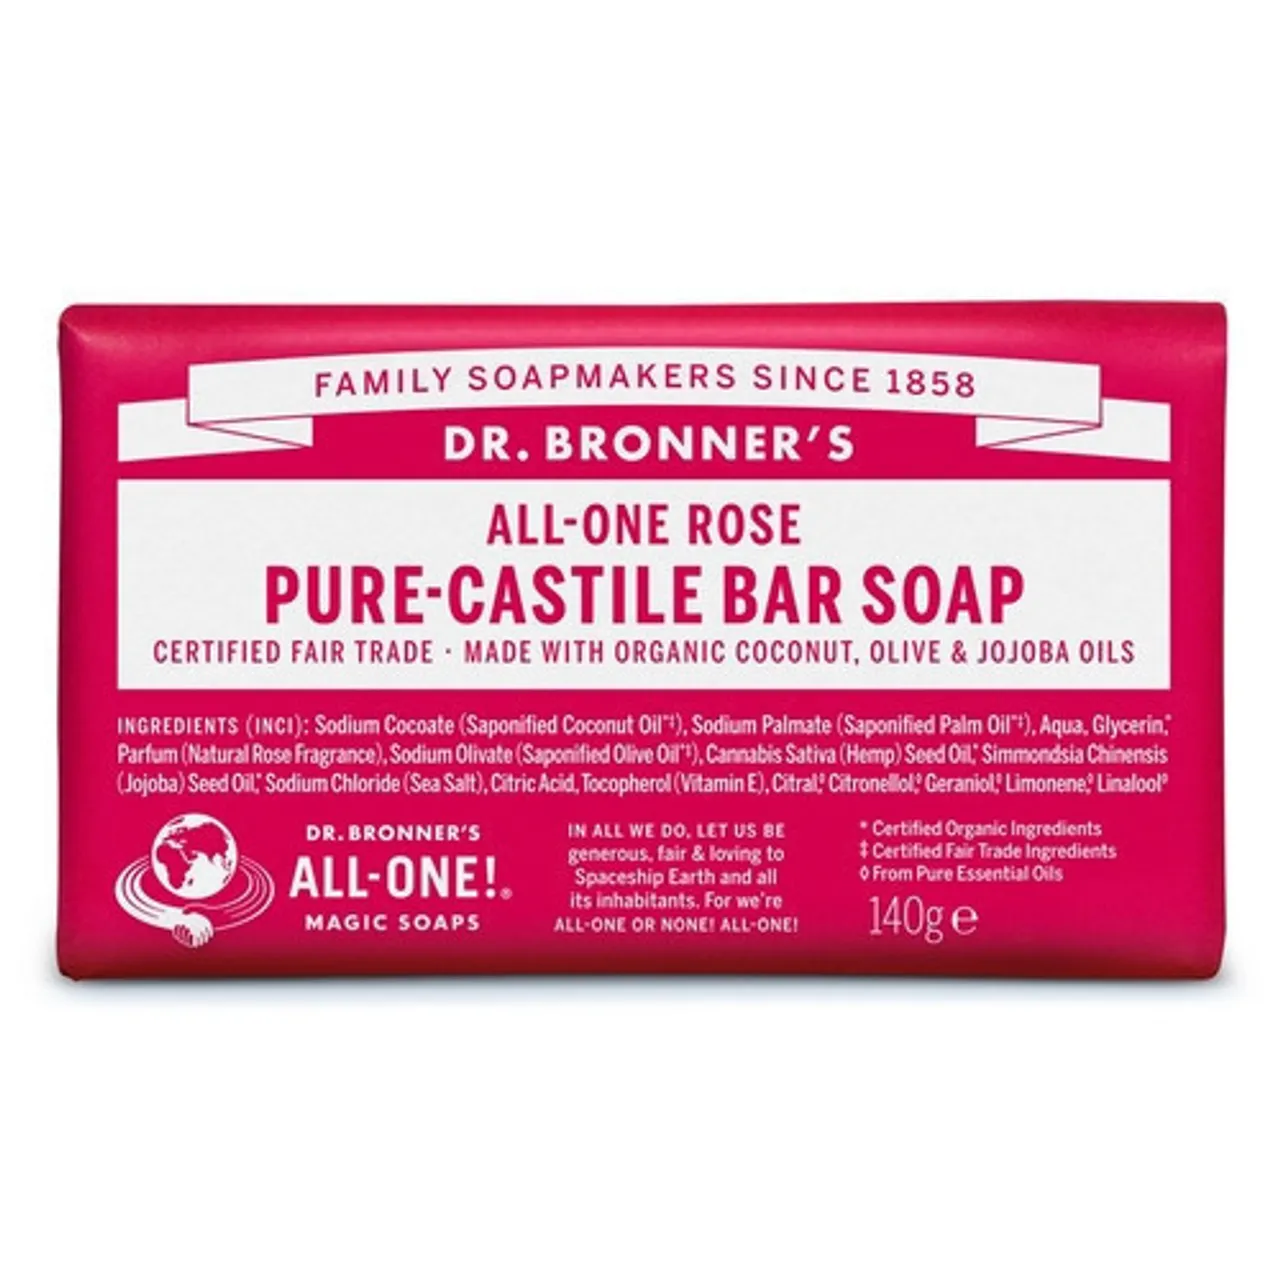 Dr. Bronner's Rose Pure-Castile Bar Soap 140g